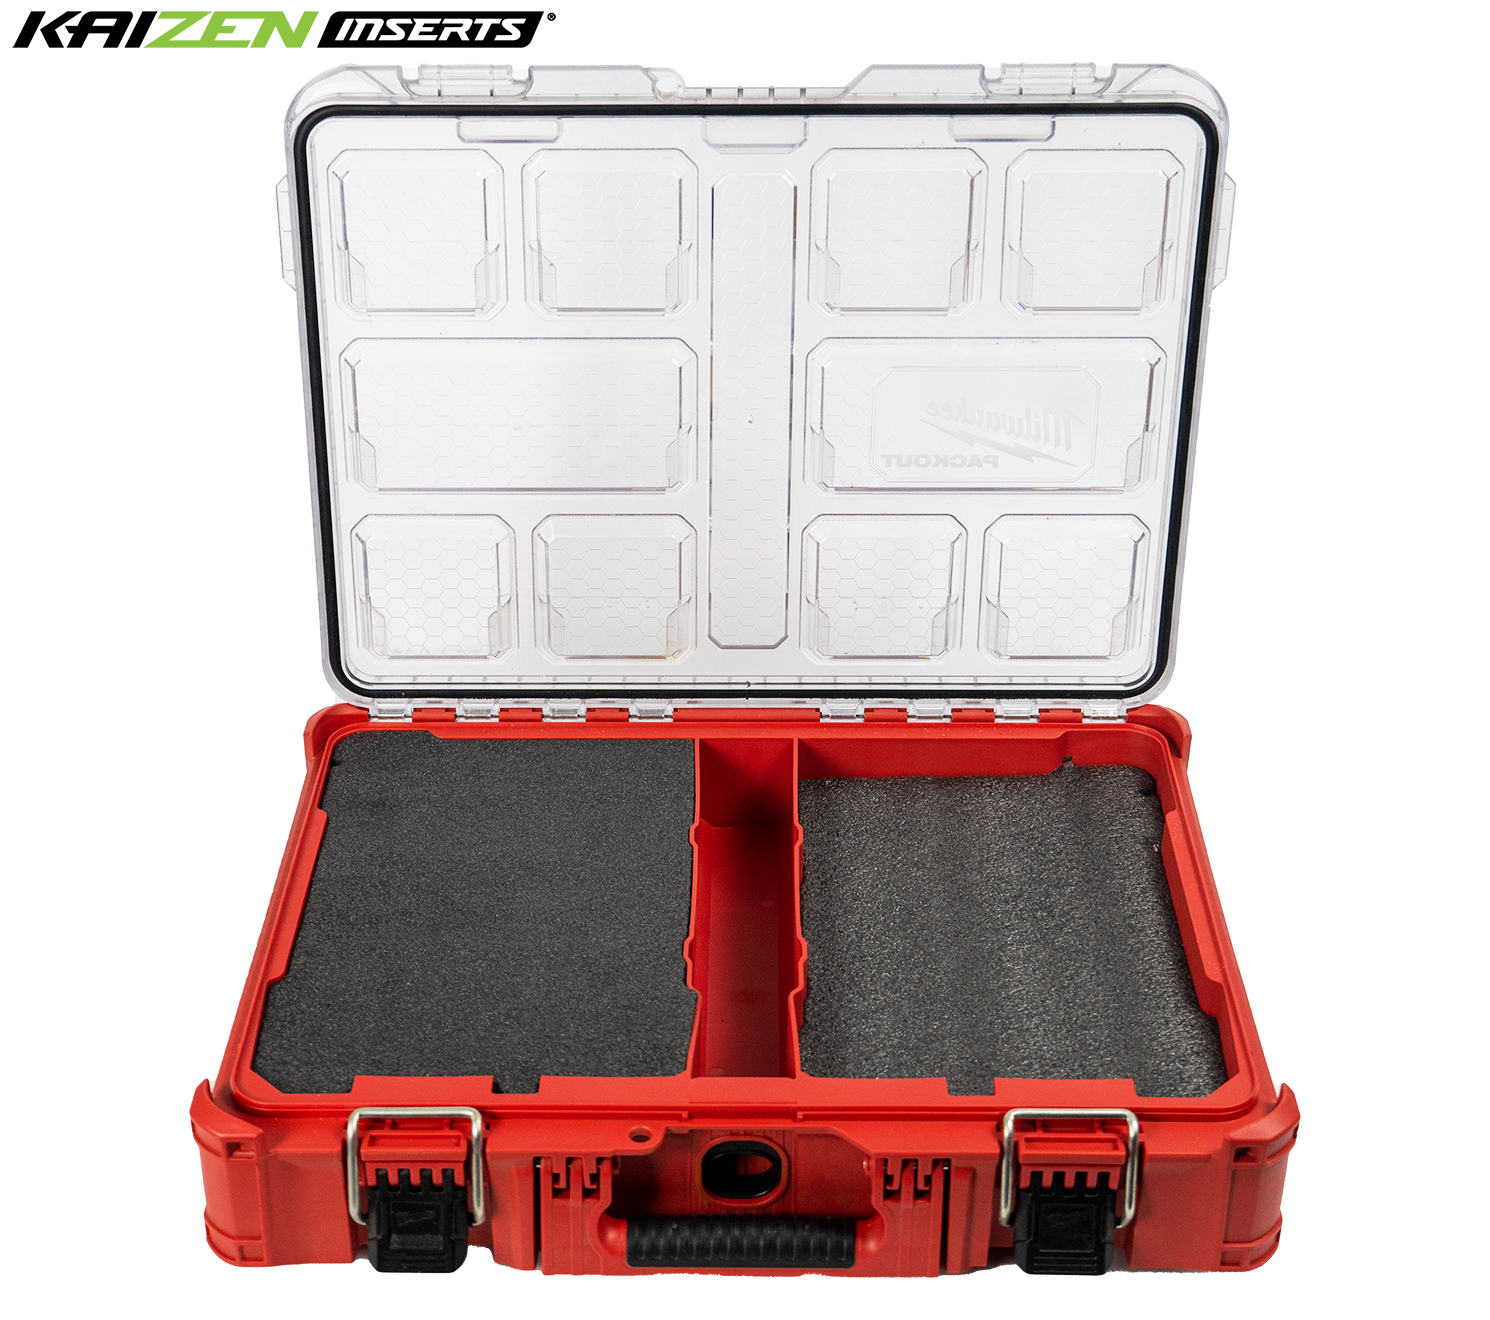 Milwaukee Packout Xl Tool Box 48-22-8429 - Kaizen Foam Inserts